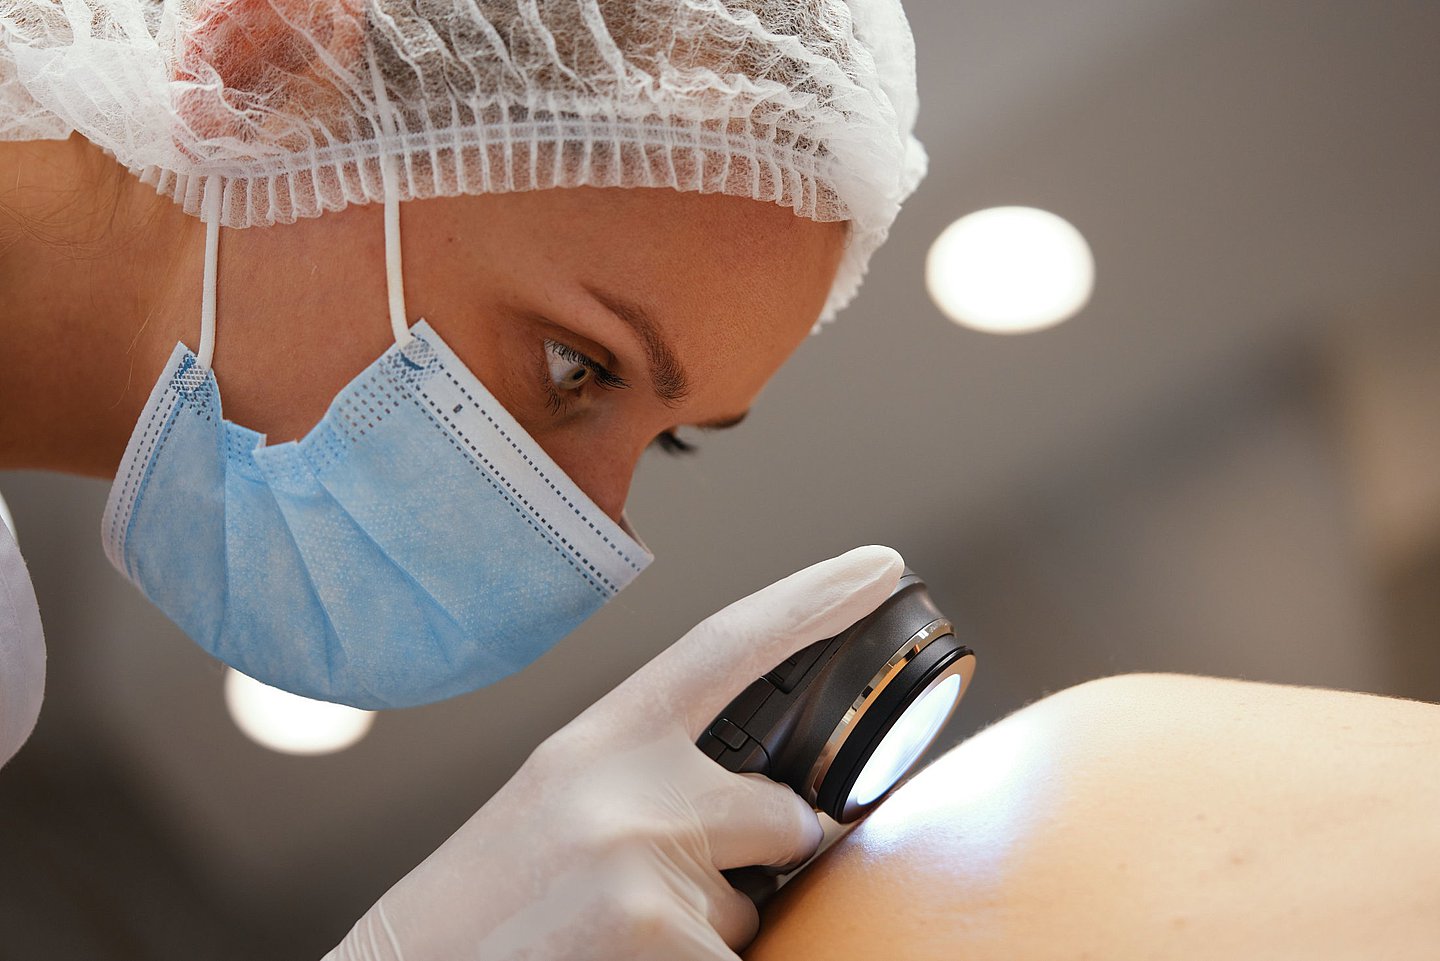 Foto: Eine Ärztin untersucht die Haut eines Patienten mit einer Lupe.